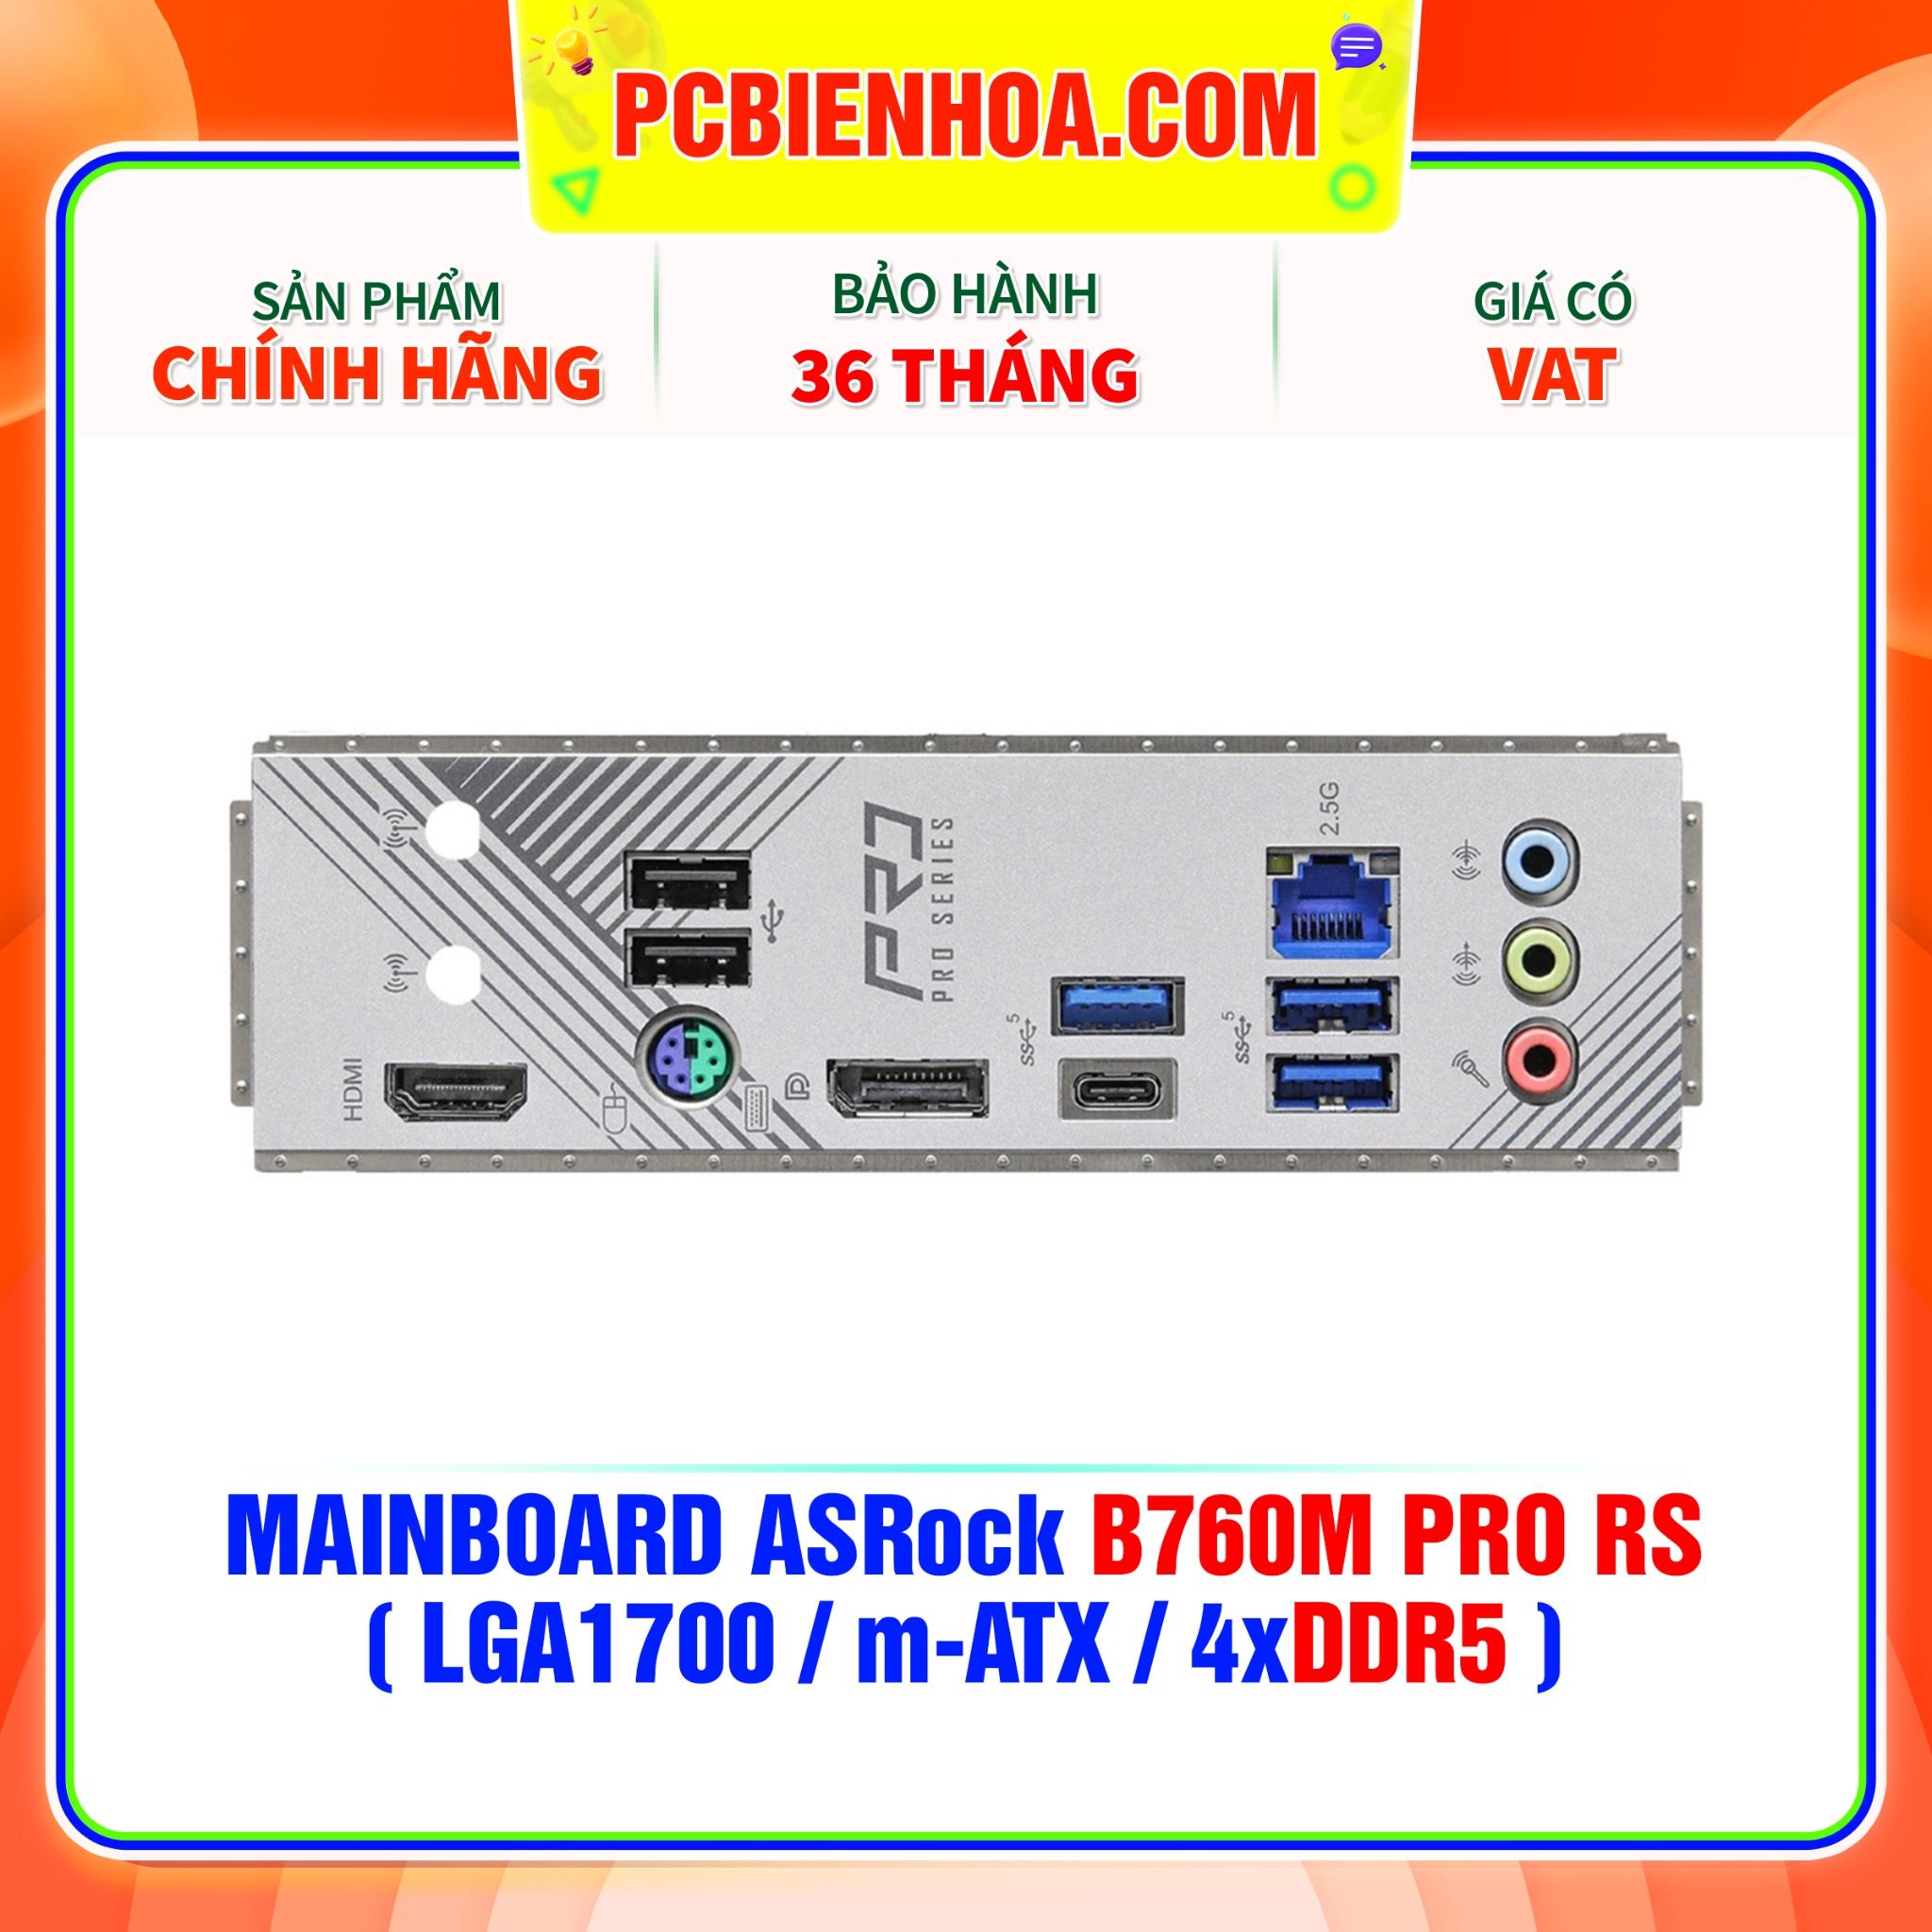  DDR5 - MAINBOARD ASRock B760M PRO RS ( LGA1700 / m-ATX / 4xDDR5 ) 